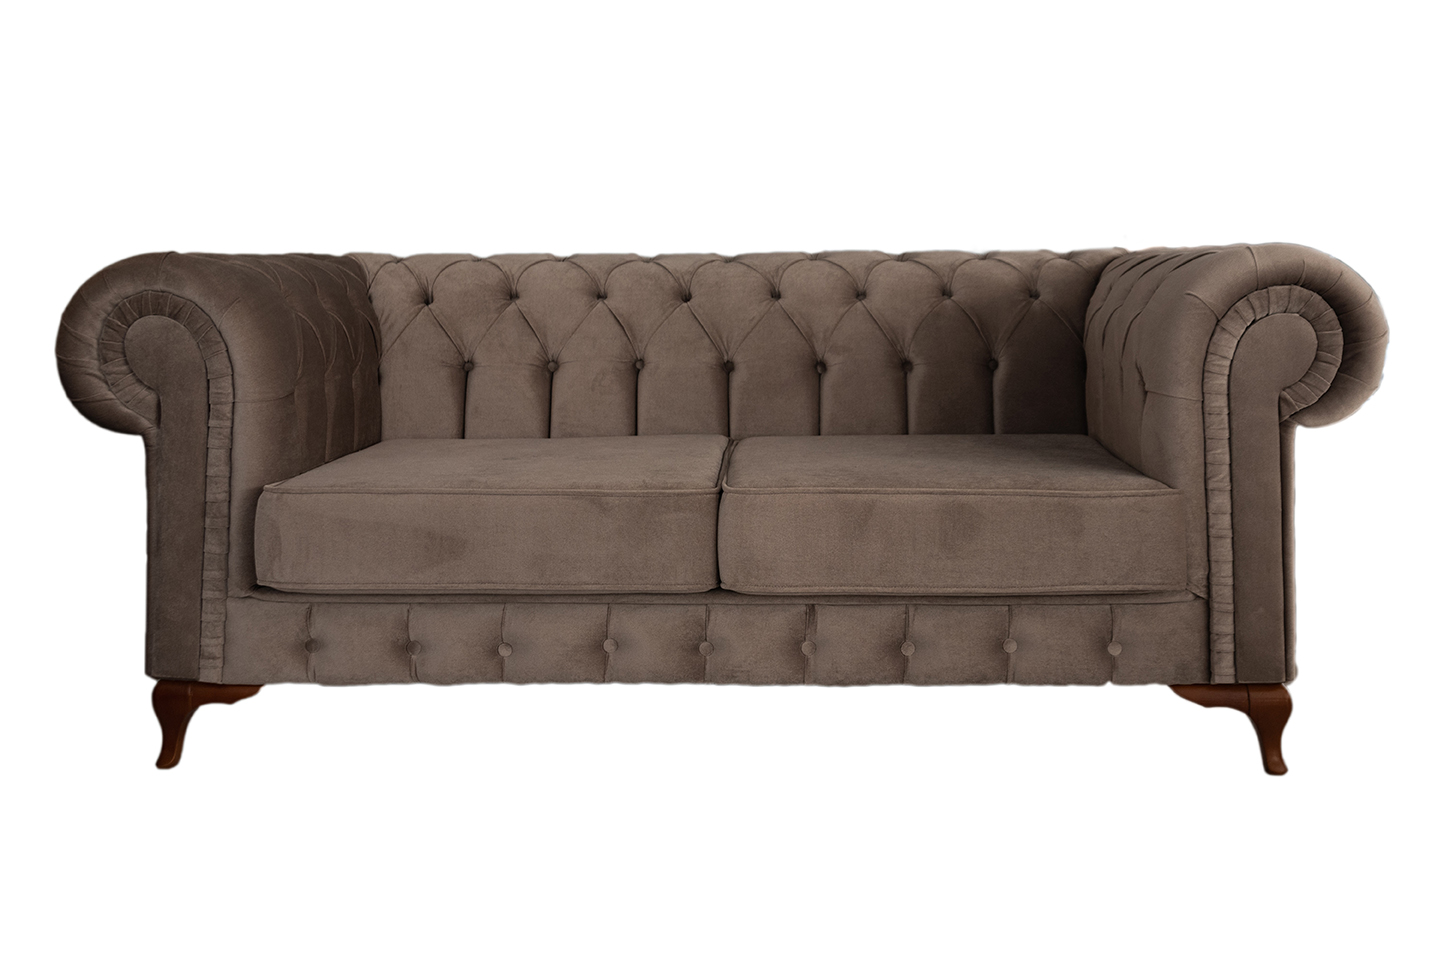 Σαλόνι με τριθέσιο και διθέσιο καναπέ